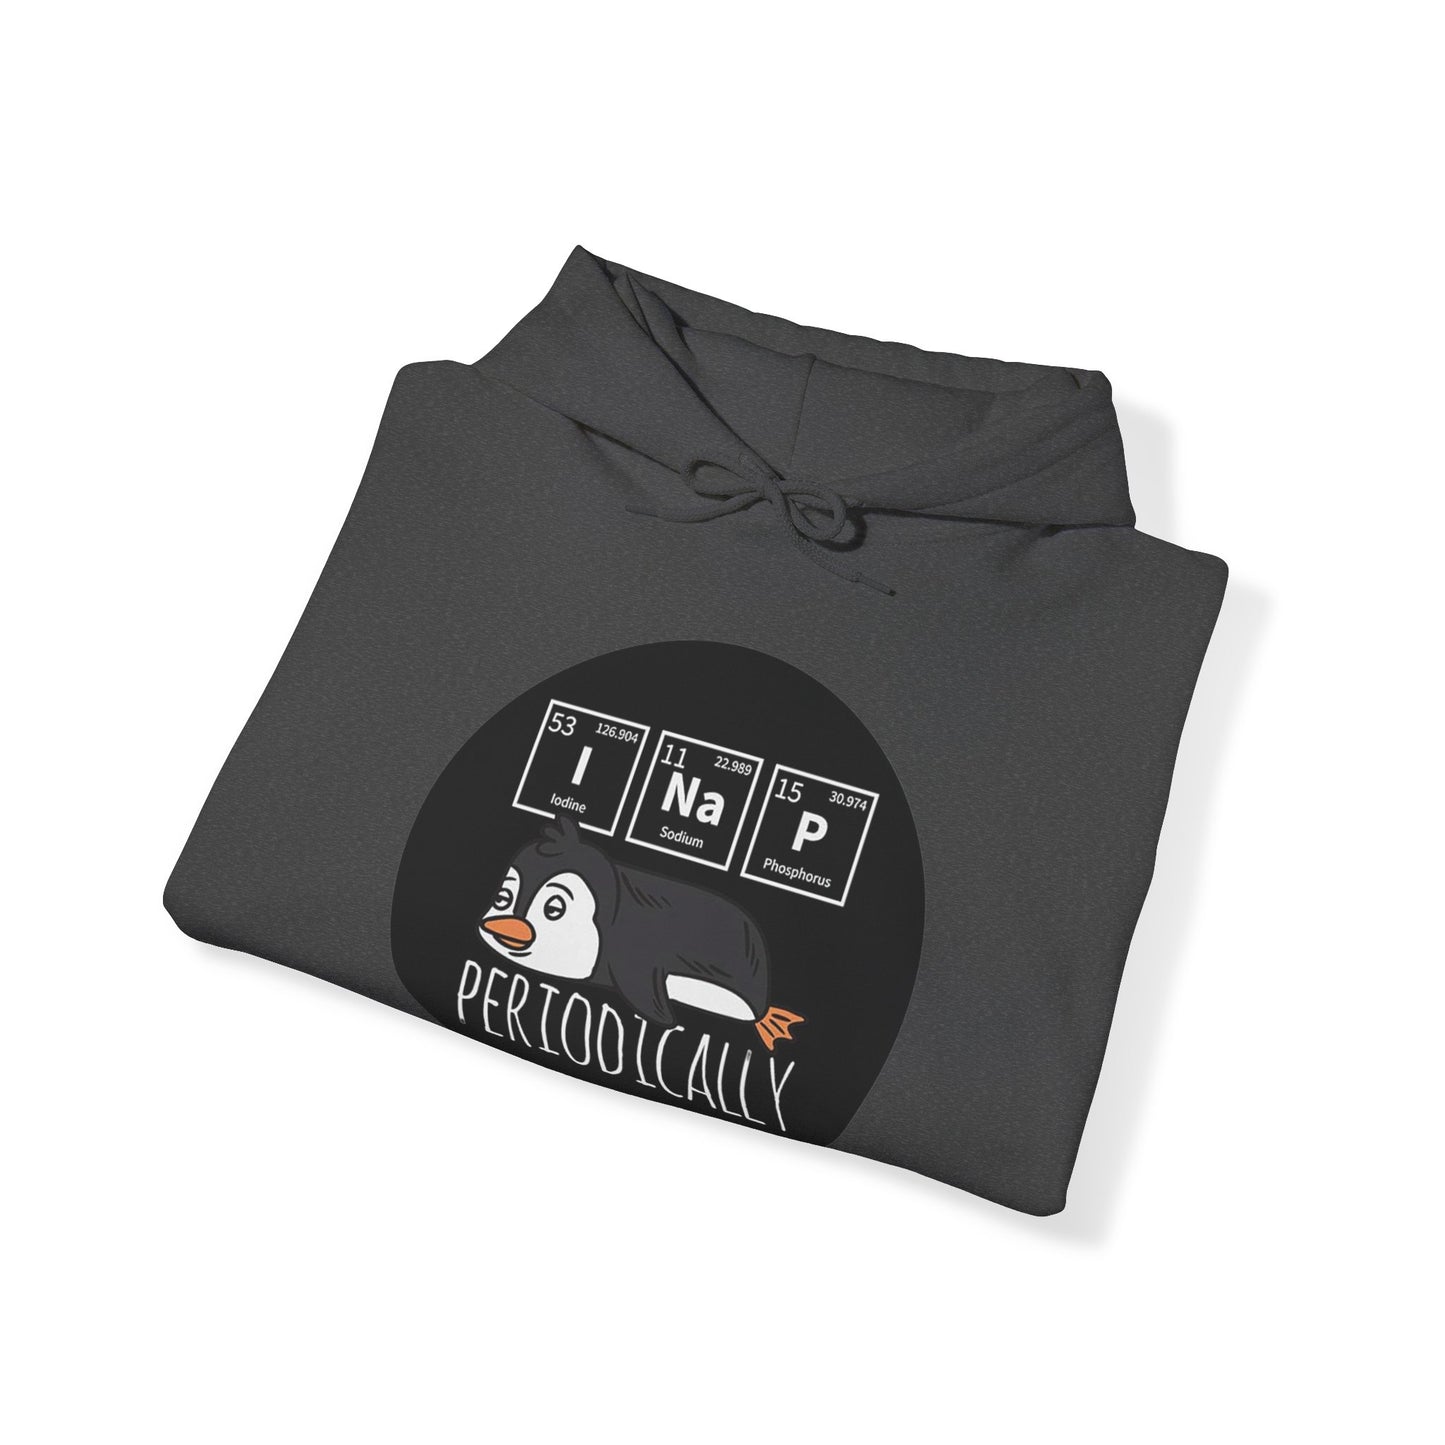 Periodically I NaP Penguin  Unisex Heavy Blend™ Hooded Sweatshirt